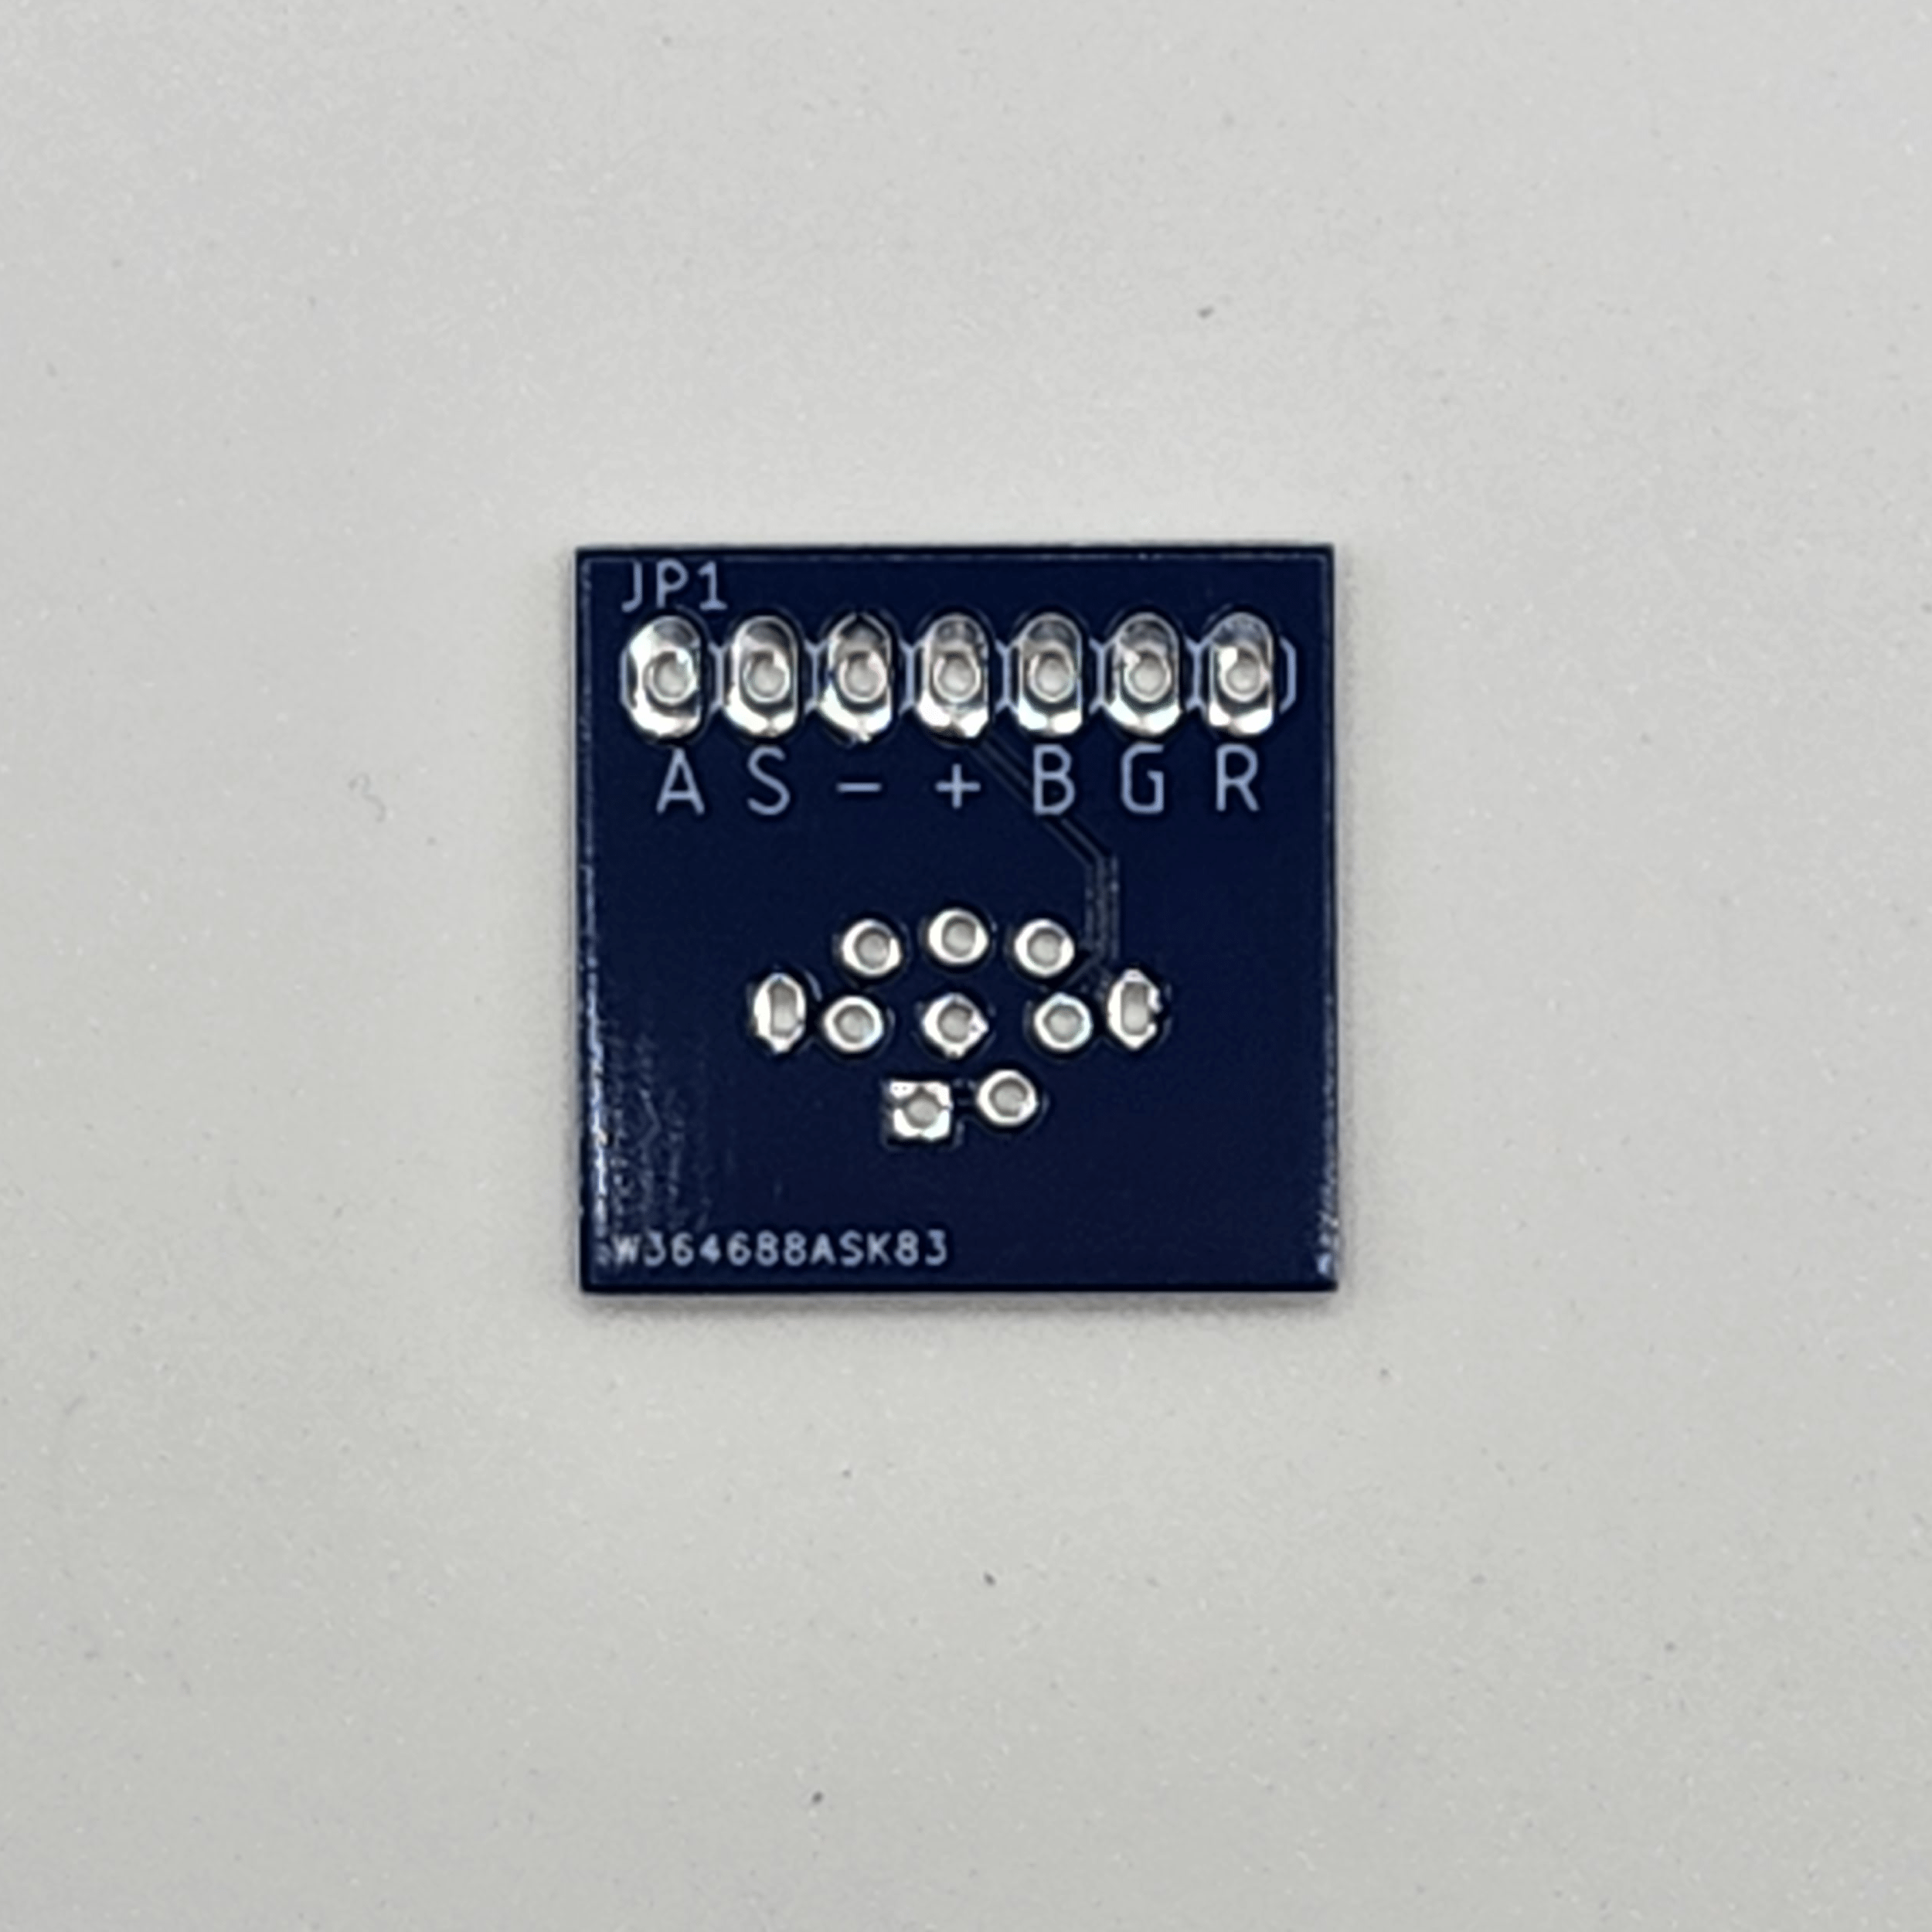 Back of Mini-DIN 8 pin breakout board